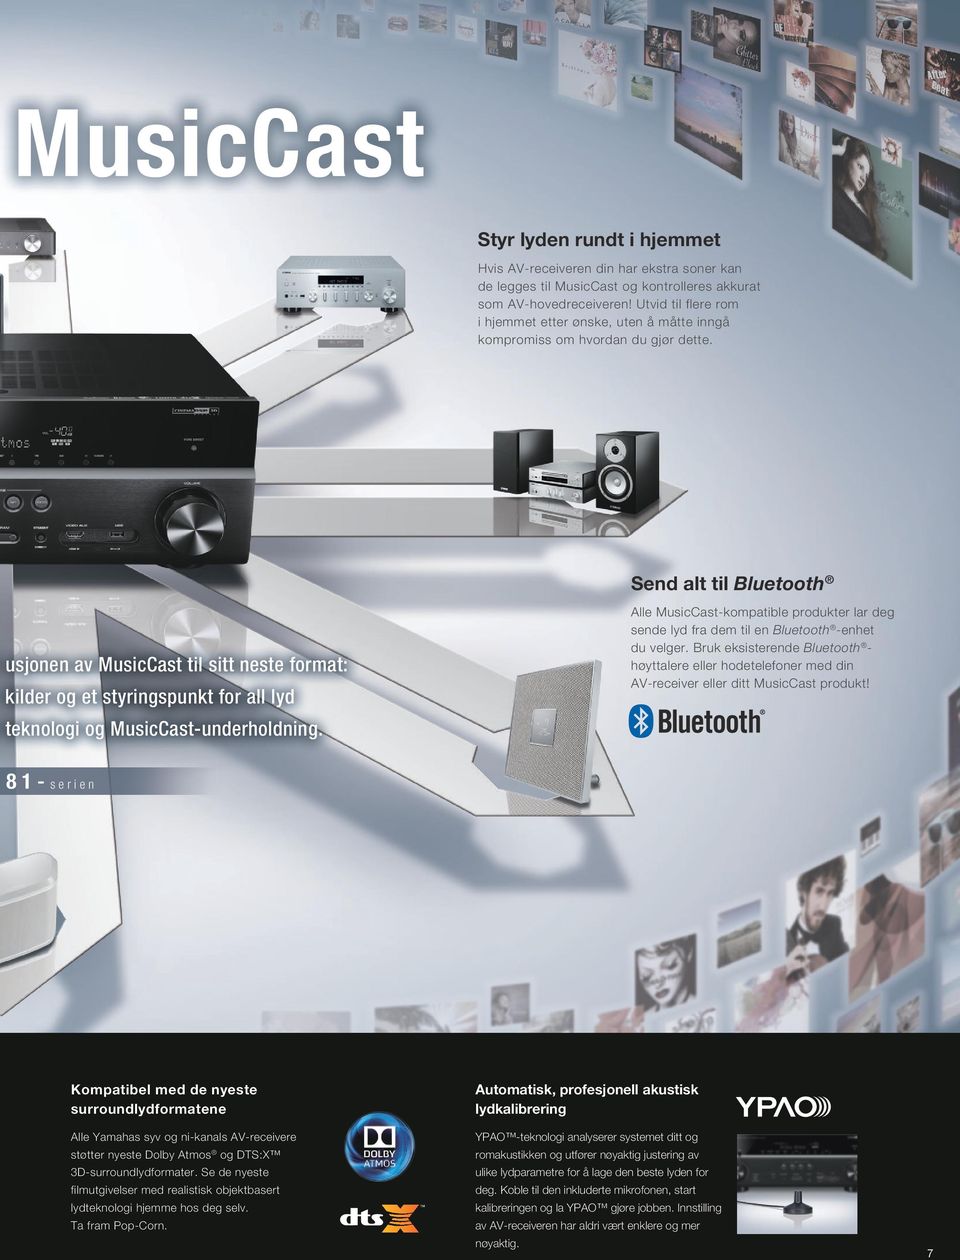 Send alt til Bluetooth usjonen av MusicCast til sitt neste format: kilder og et styringspunkt for all lyd teknologi og MusicCast-underholdning.